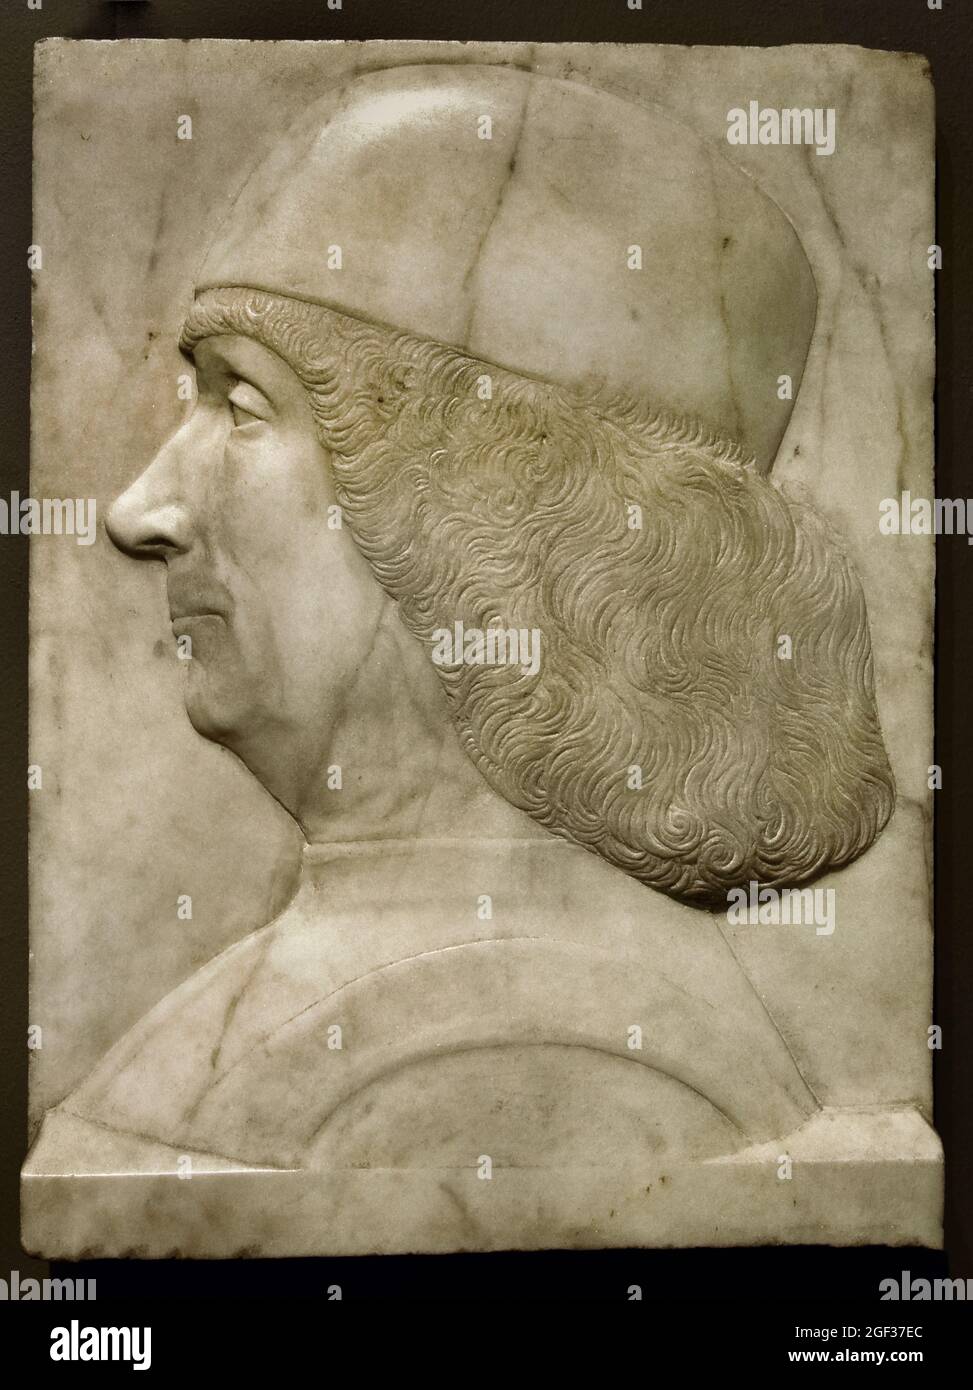 Portrait de Gentile Bellini, 1500 marbre 30.7 × 22.5 par Tullio i Lombardo  1455-1532 Italie, Italien, Stark profil de cet homme plus âgé. Le sitter  est l'artiste vénitienne Gentile Bellini. Même les